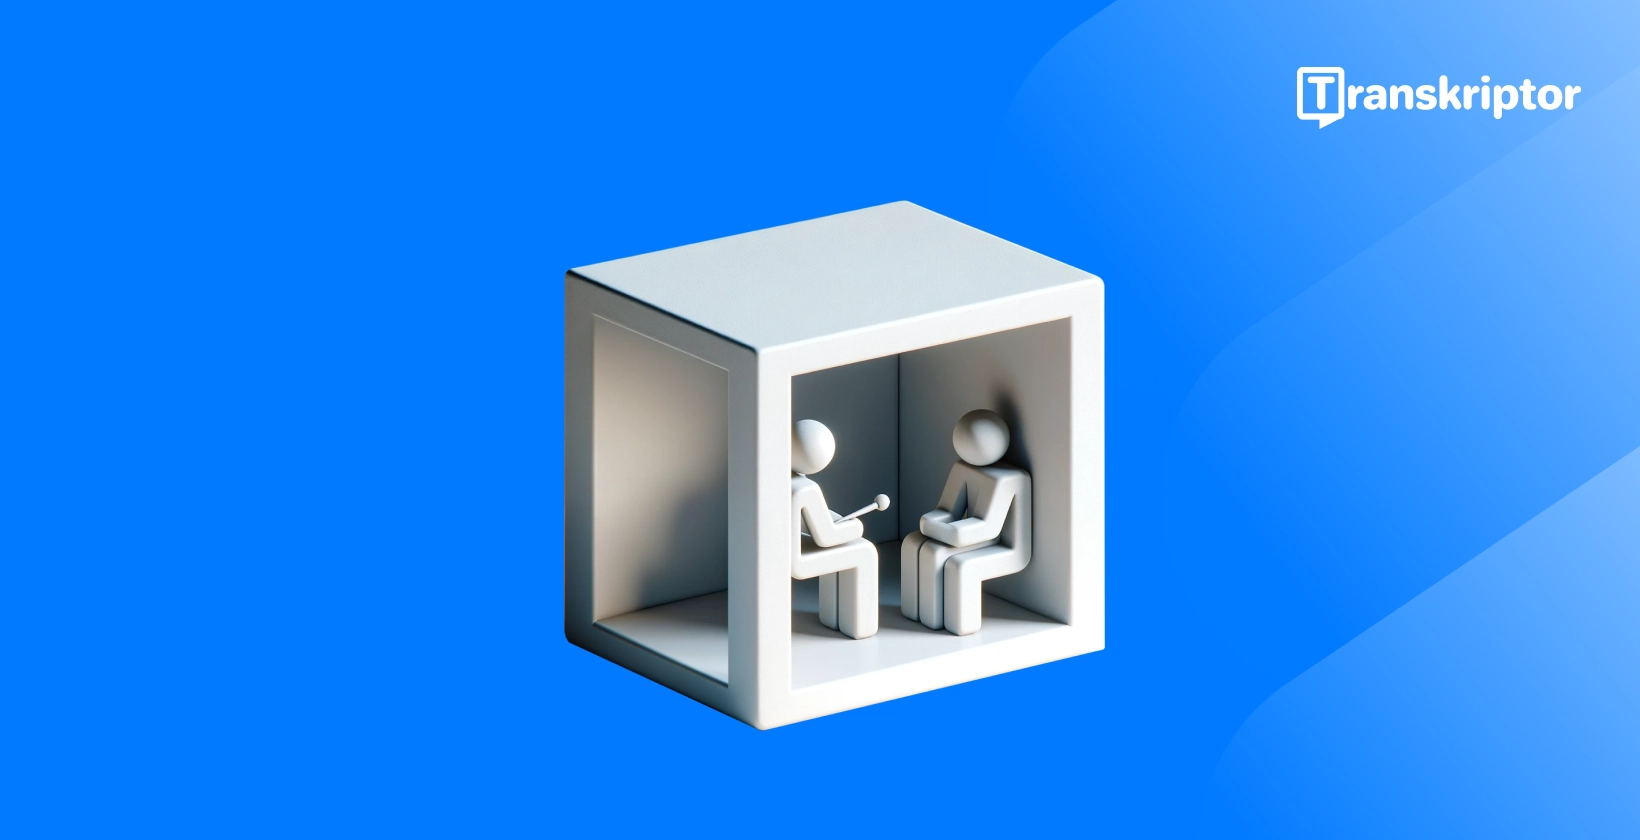 Transskribering af interviews afbildet af 3D-figurer i en kasse, der fremhæver interviewprocessen for klarhed.